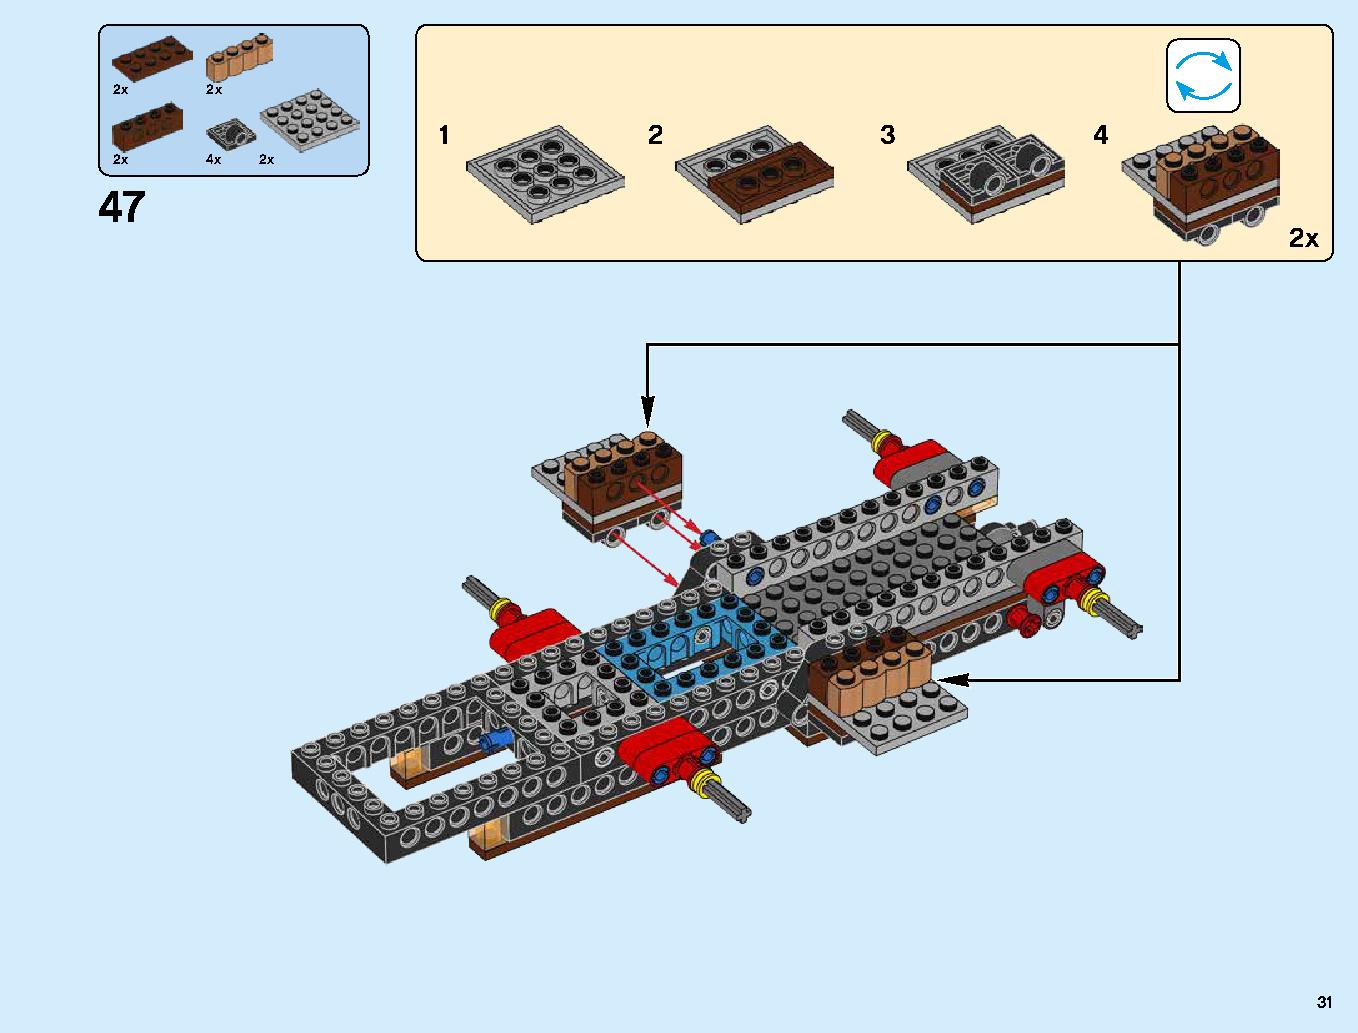 ハンティング・デスストライカー 70654 レゴの商品情報 レゴの説明書・組立方法 31 page